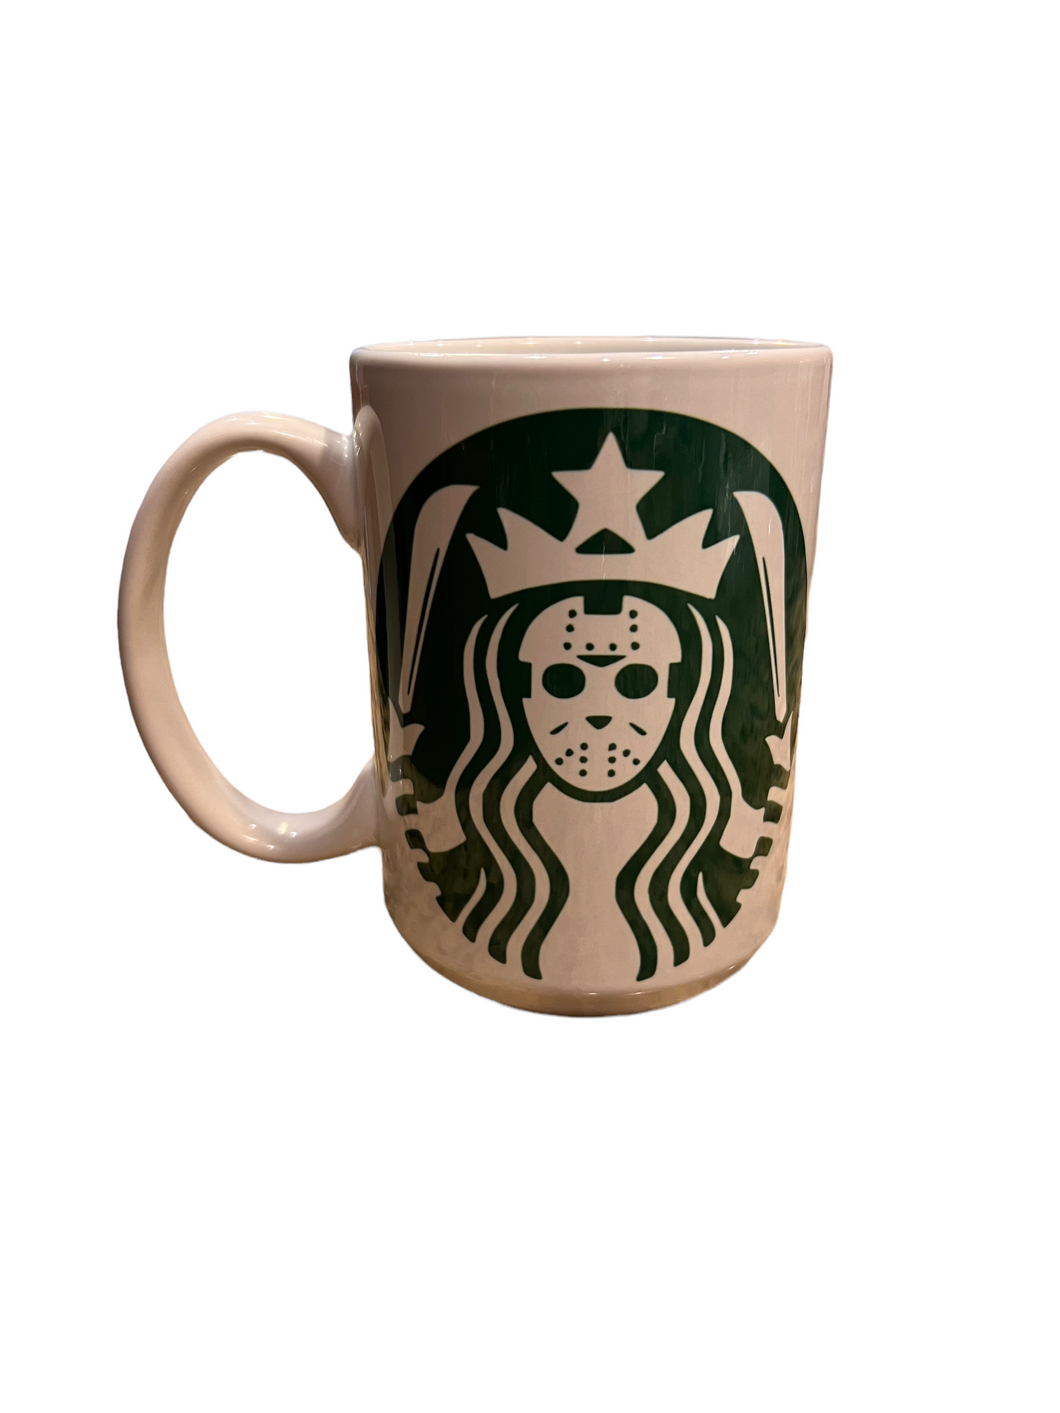 Jason Voorhees Starbucks mug